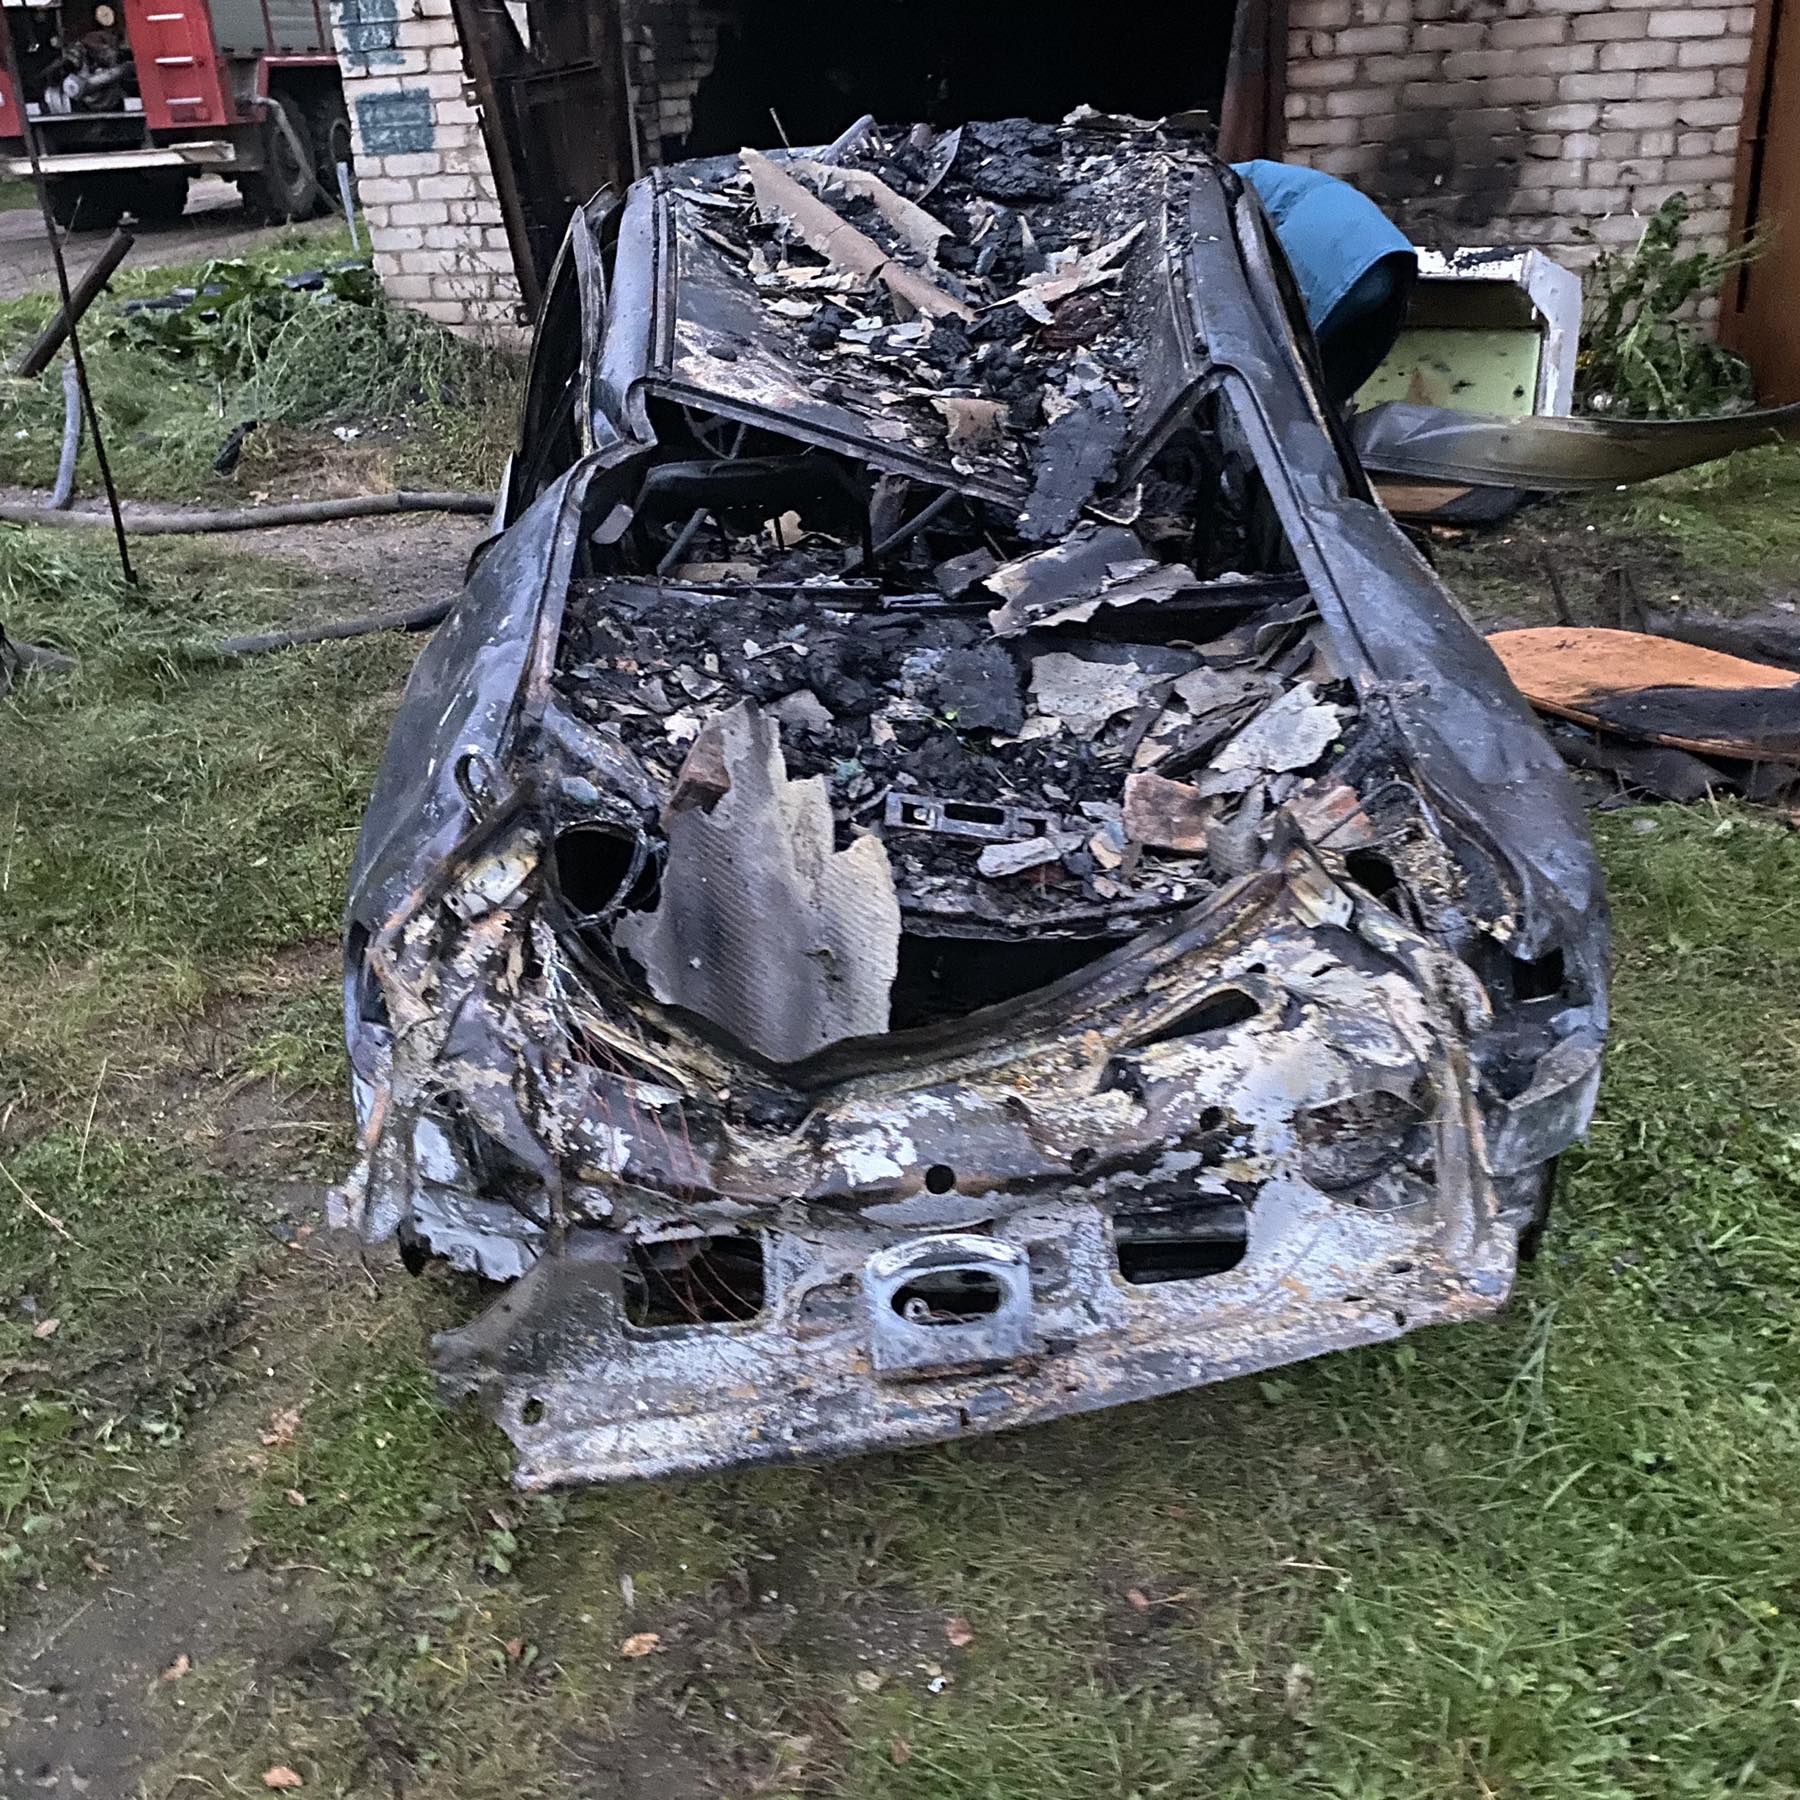 Автомобиль Renault Megane дотла сгорел в гараже в деревне Гусино